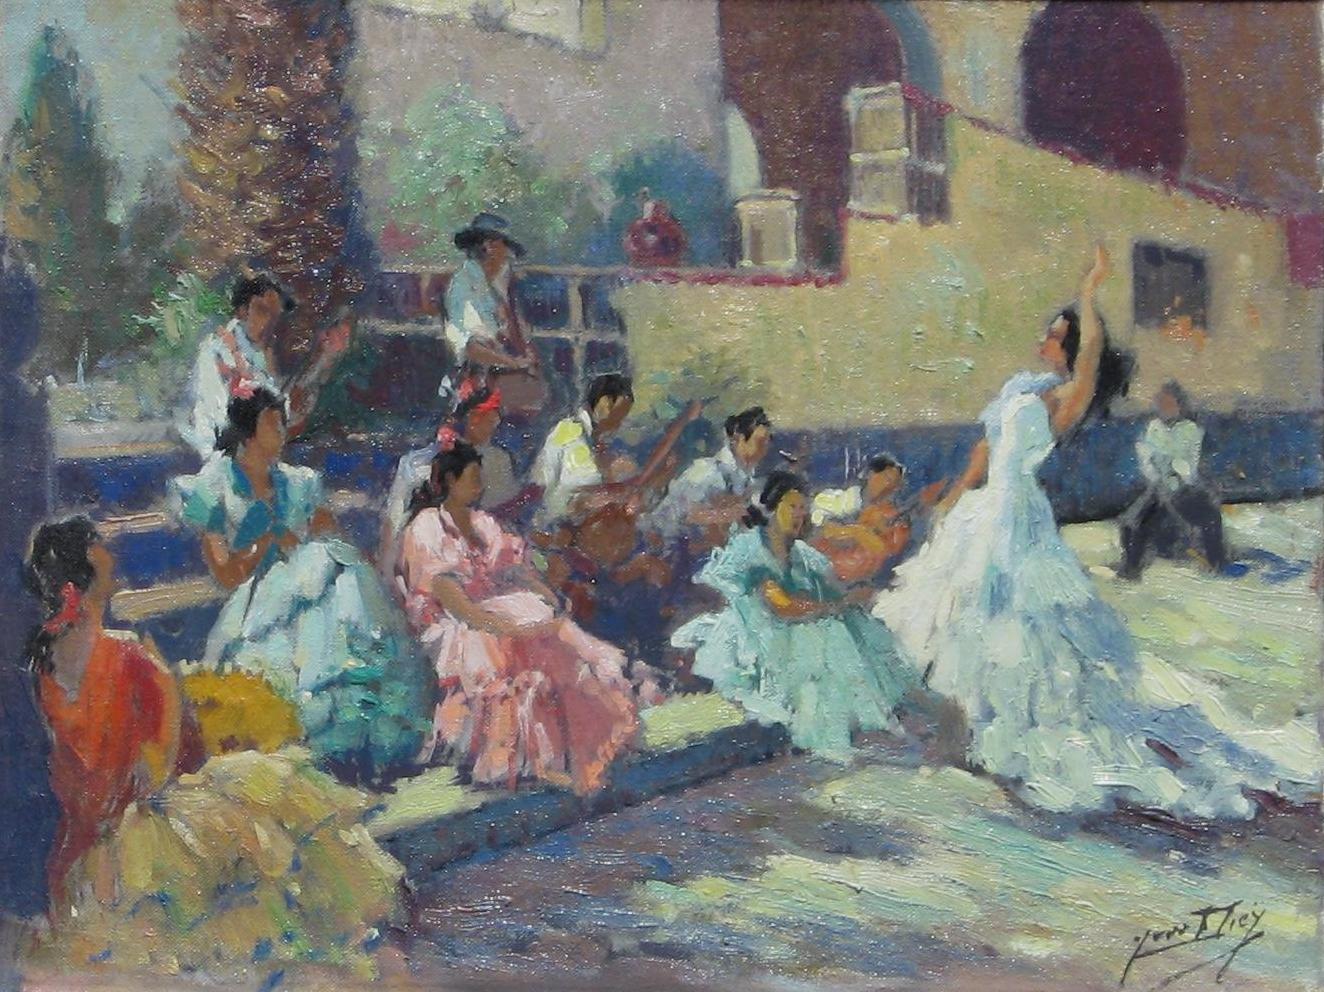 Huile originale sur toile de l'artiste français Yves Diey (1892-1984).  
Signé en bas à droite. En parfait état. 
Le sujet met en scène des danseuses de flamenco.
Mesures : 11